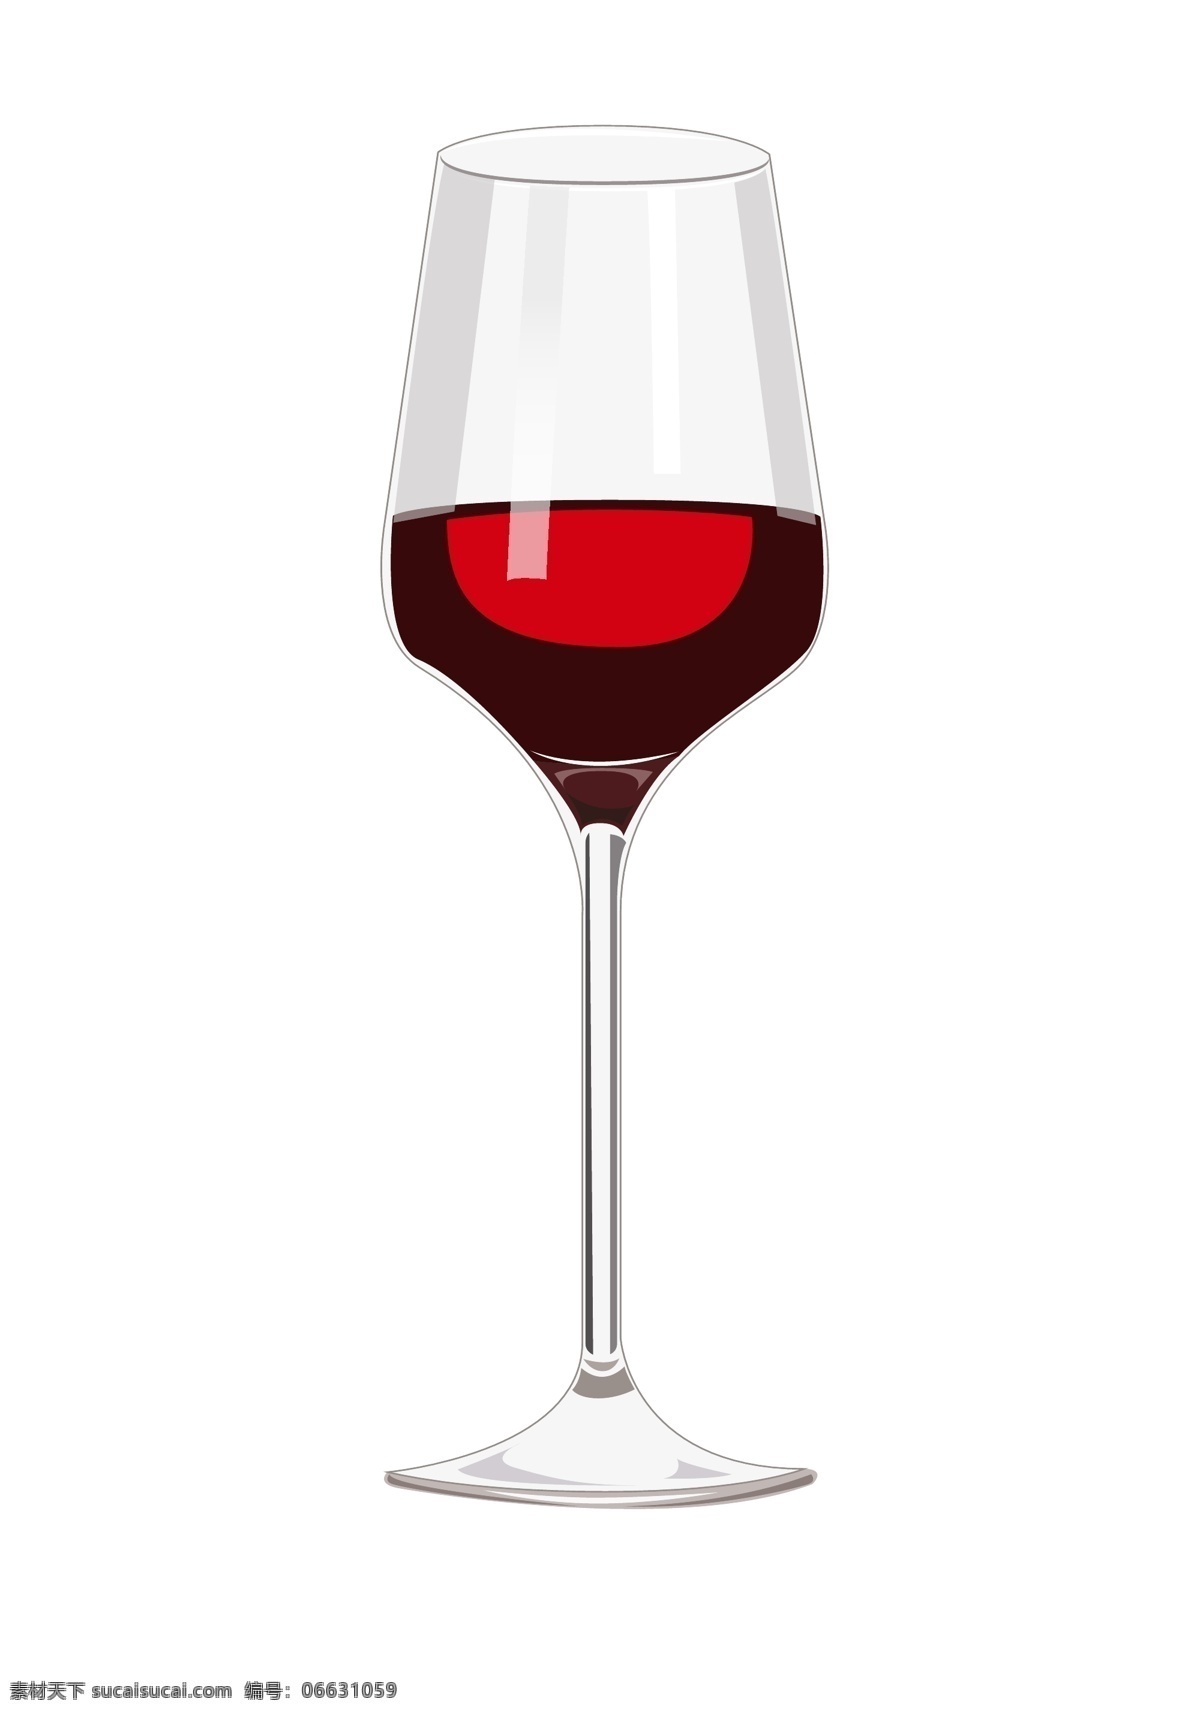 一杯 红酒 酒杯 插画 玻璃酒杯 一杯红酒 喝酒 喝红酒 酒杯插画 红酒玻璃酒杯 高脚杯 红酒杯